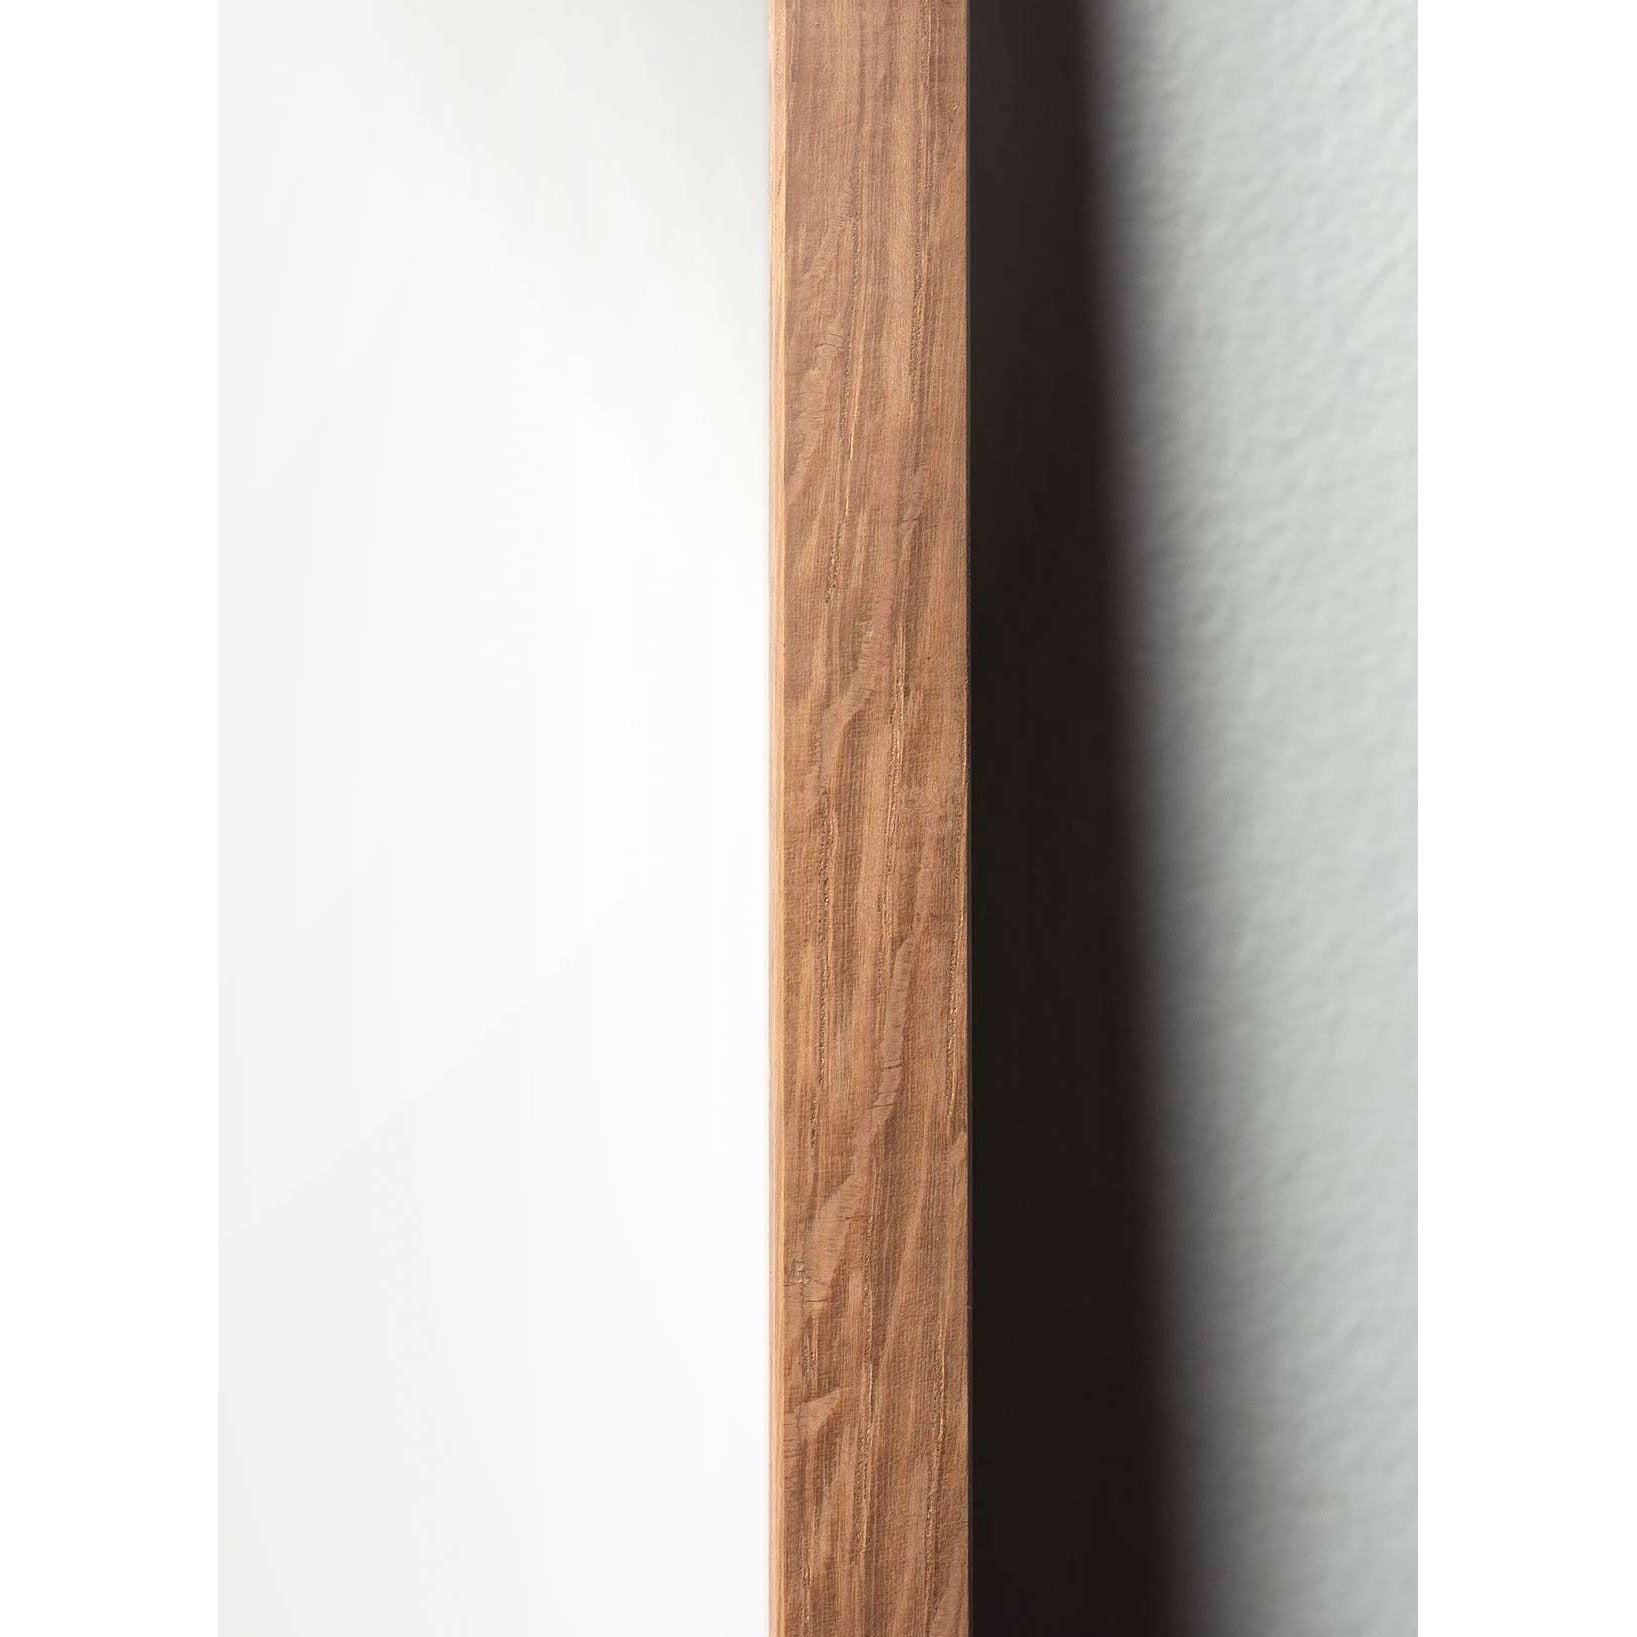 brainchild Munan ristimuodon juliste, kevyestä puusta valmistettu runko 30x40 cm, ruskea